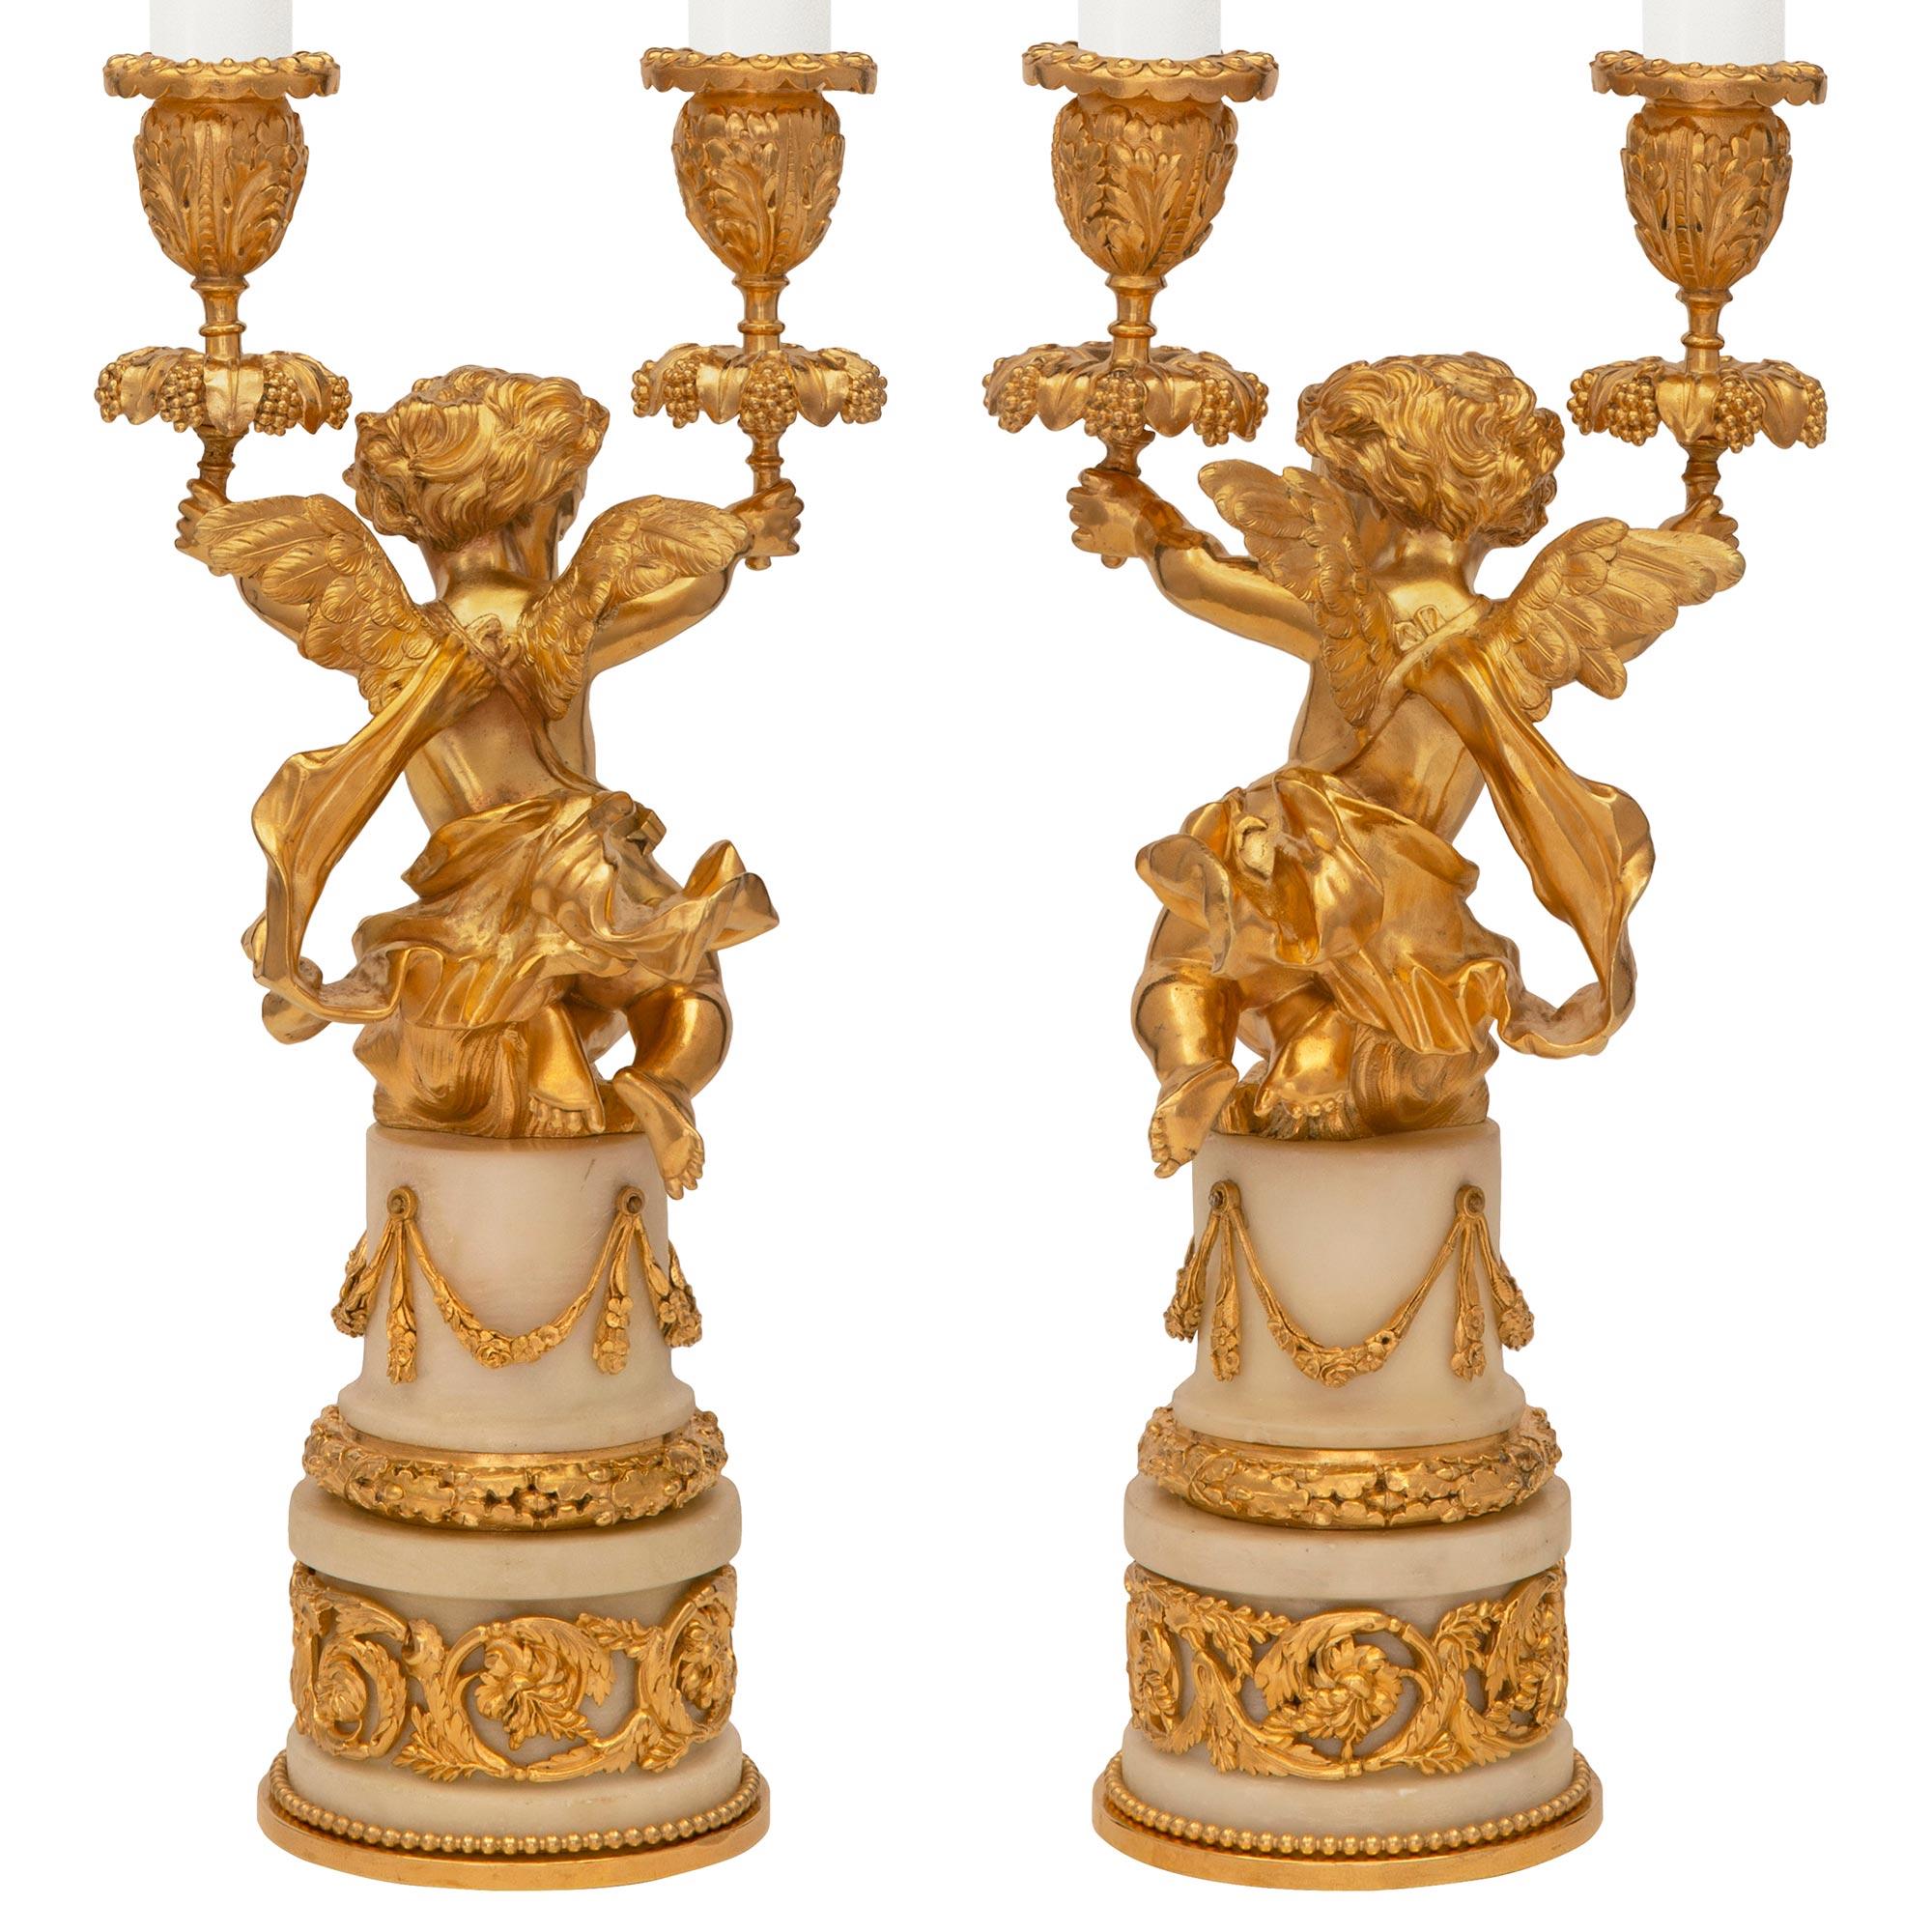 Une charmante paire de candélabres en marbre de Carrare blanc et bronze doré de style Louis XVI du 19ème siècle de très haute qualité. Chaque candélabre à deux bras est surélevé par une base circulaire en marbre blanc de Carrare avec une fine